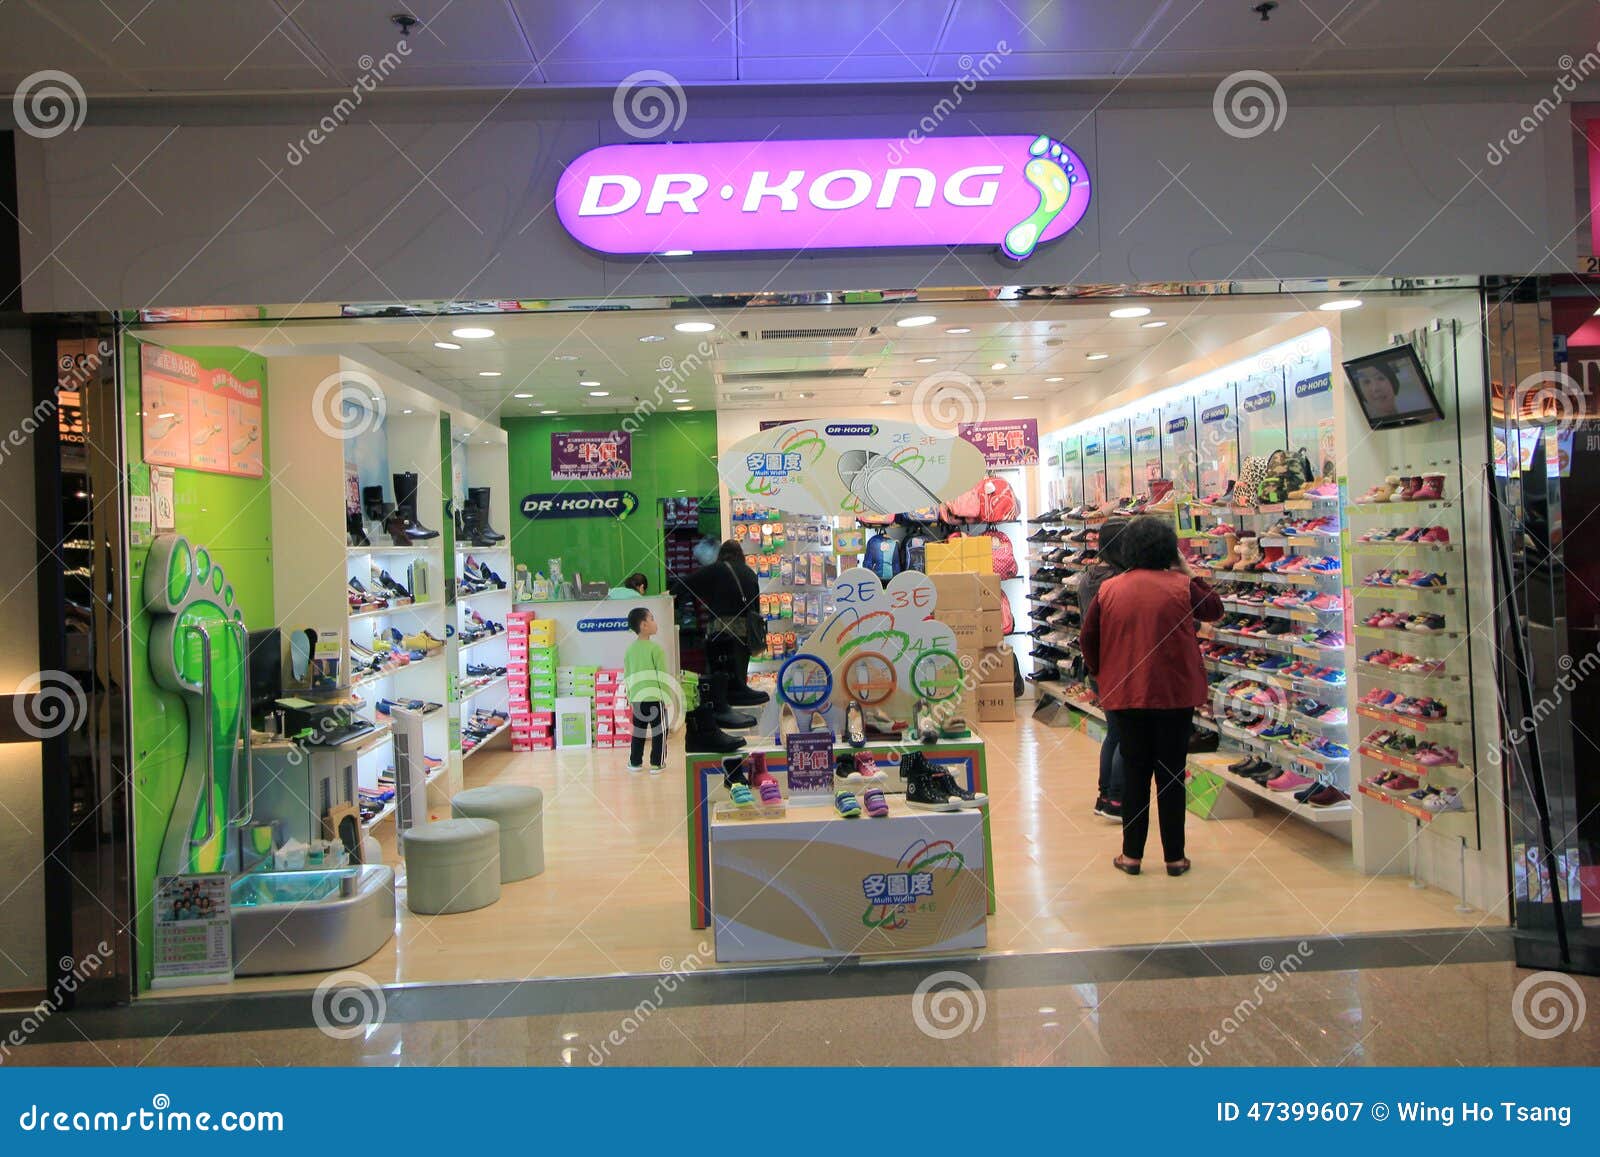  Dr  kong  shop in hong kong  editorial photography Image of 